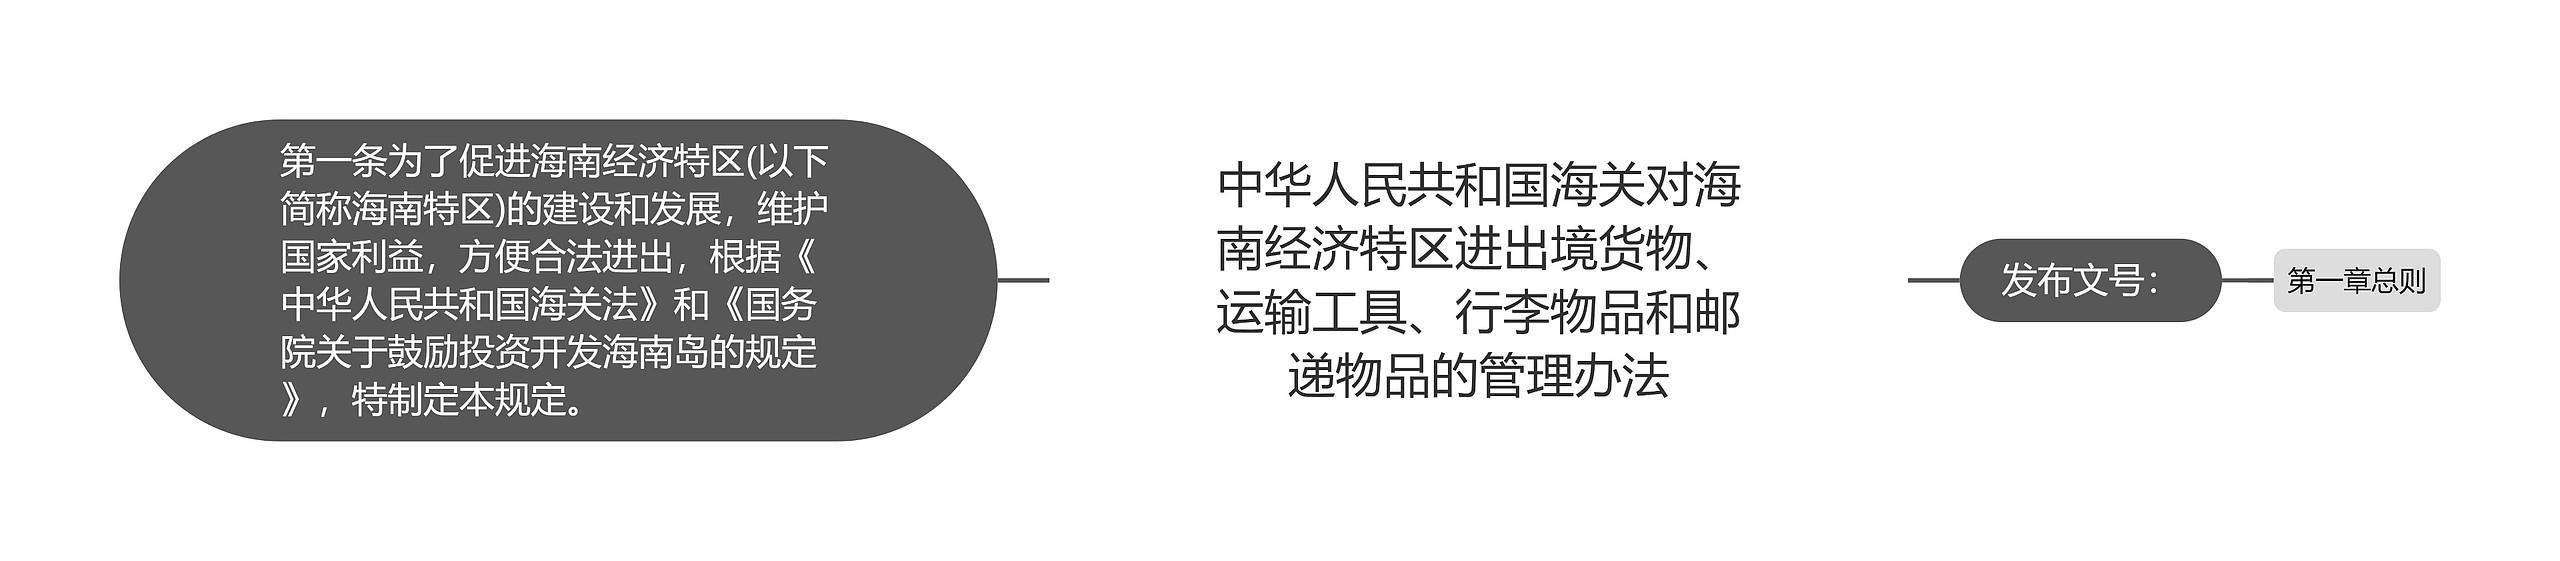 中华人民共和国海关对海南经济特区进出境货物、运输工具、行李物品和邮递物品的管理办法思维导图